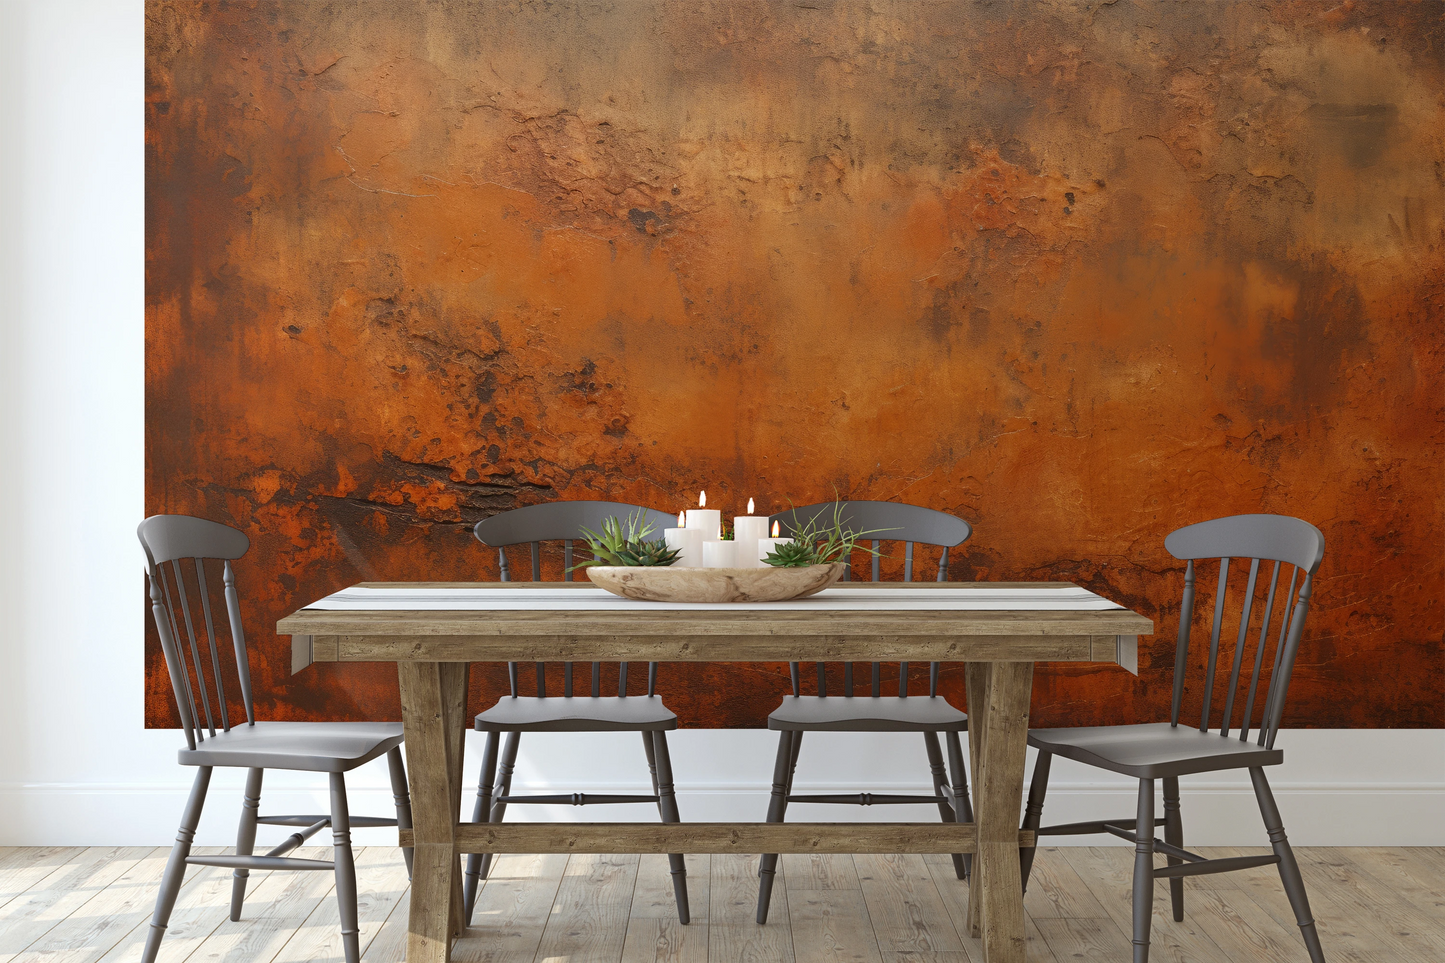 Wzór fototapety artystycznej o nazwie Rustic Copper pokazanej w aranżacji wnętrza.